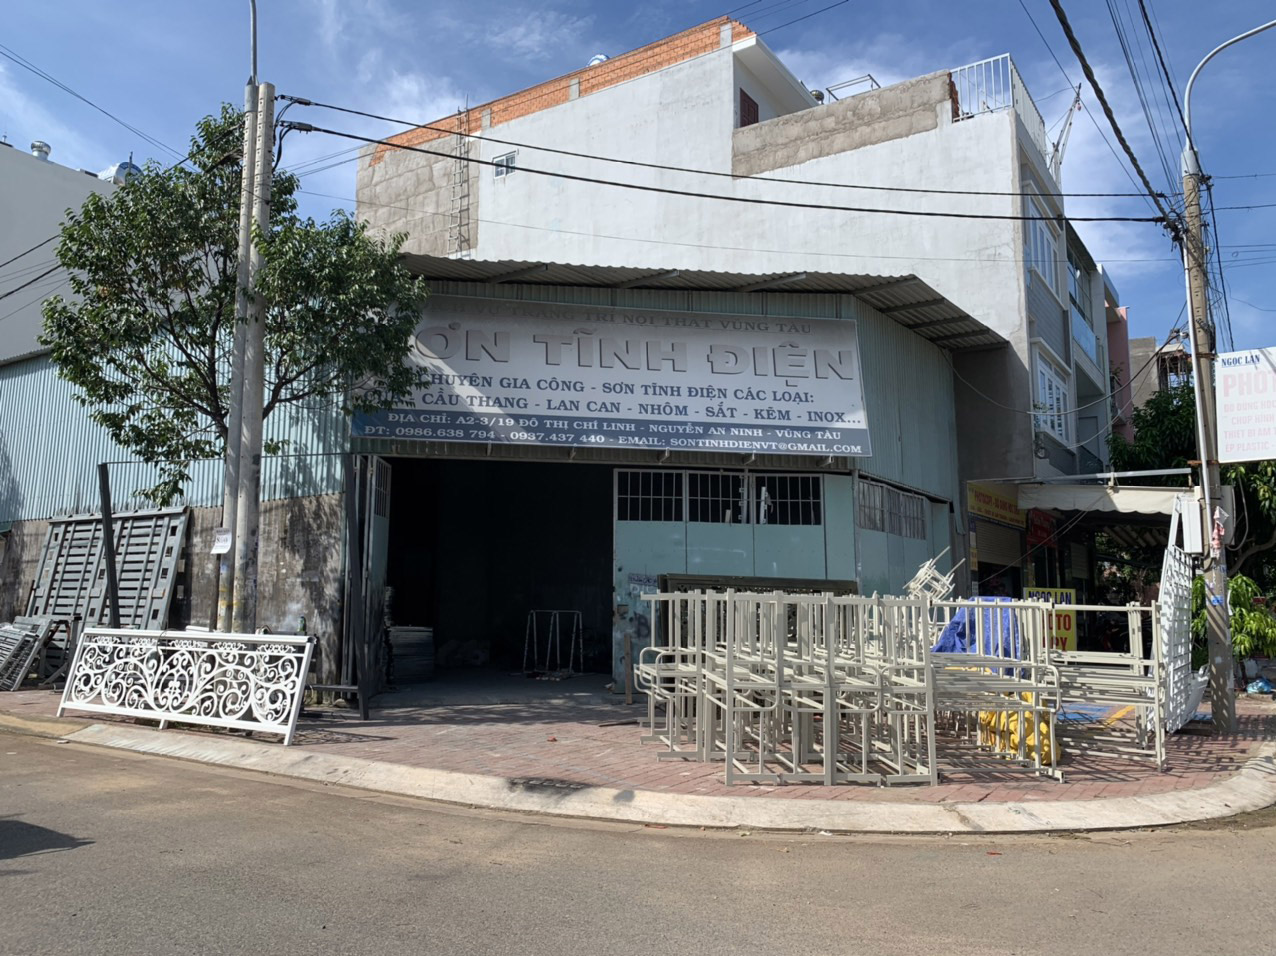 Xưởng gia công của DNTN Sơn Tĩnh Điện Vũng Tàu (A2-3/18, tổ 8, khu phố 6,  phường Nguyễn An Ninh).